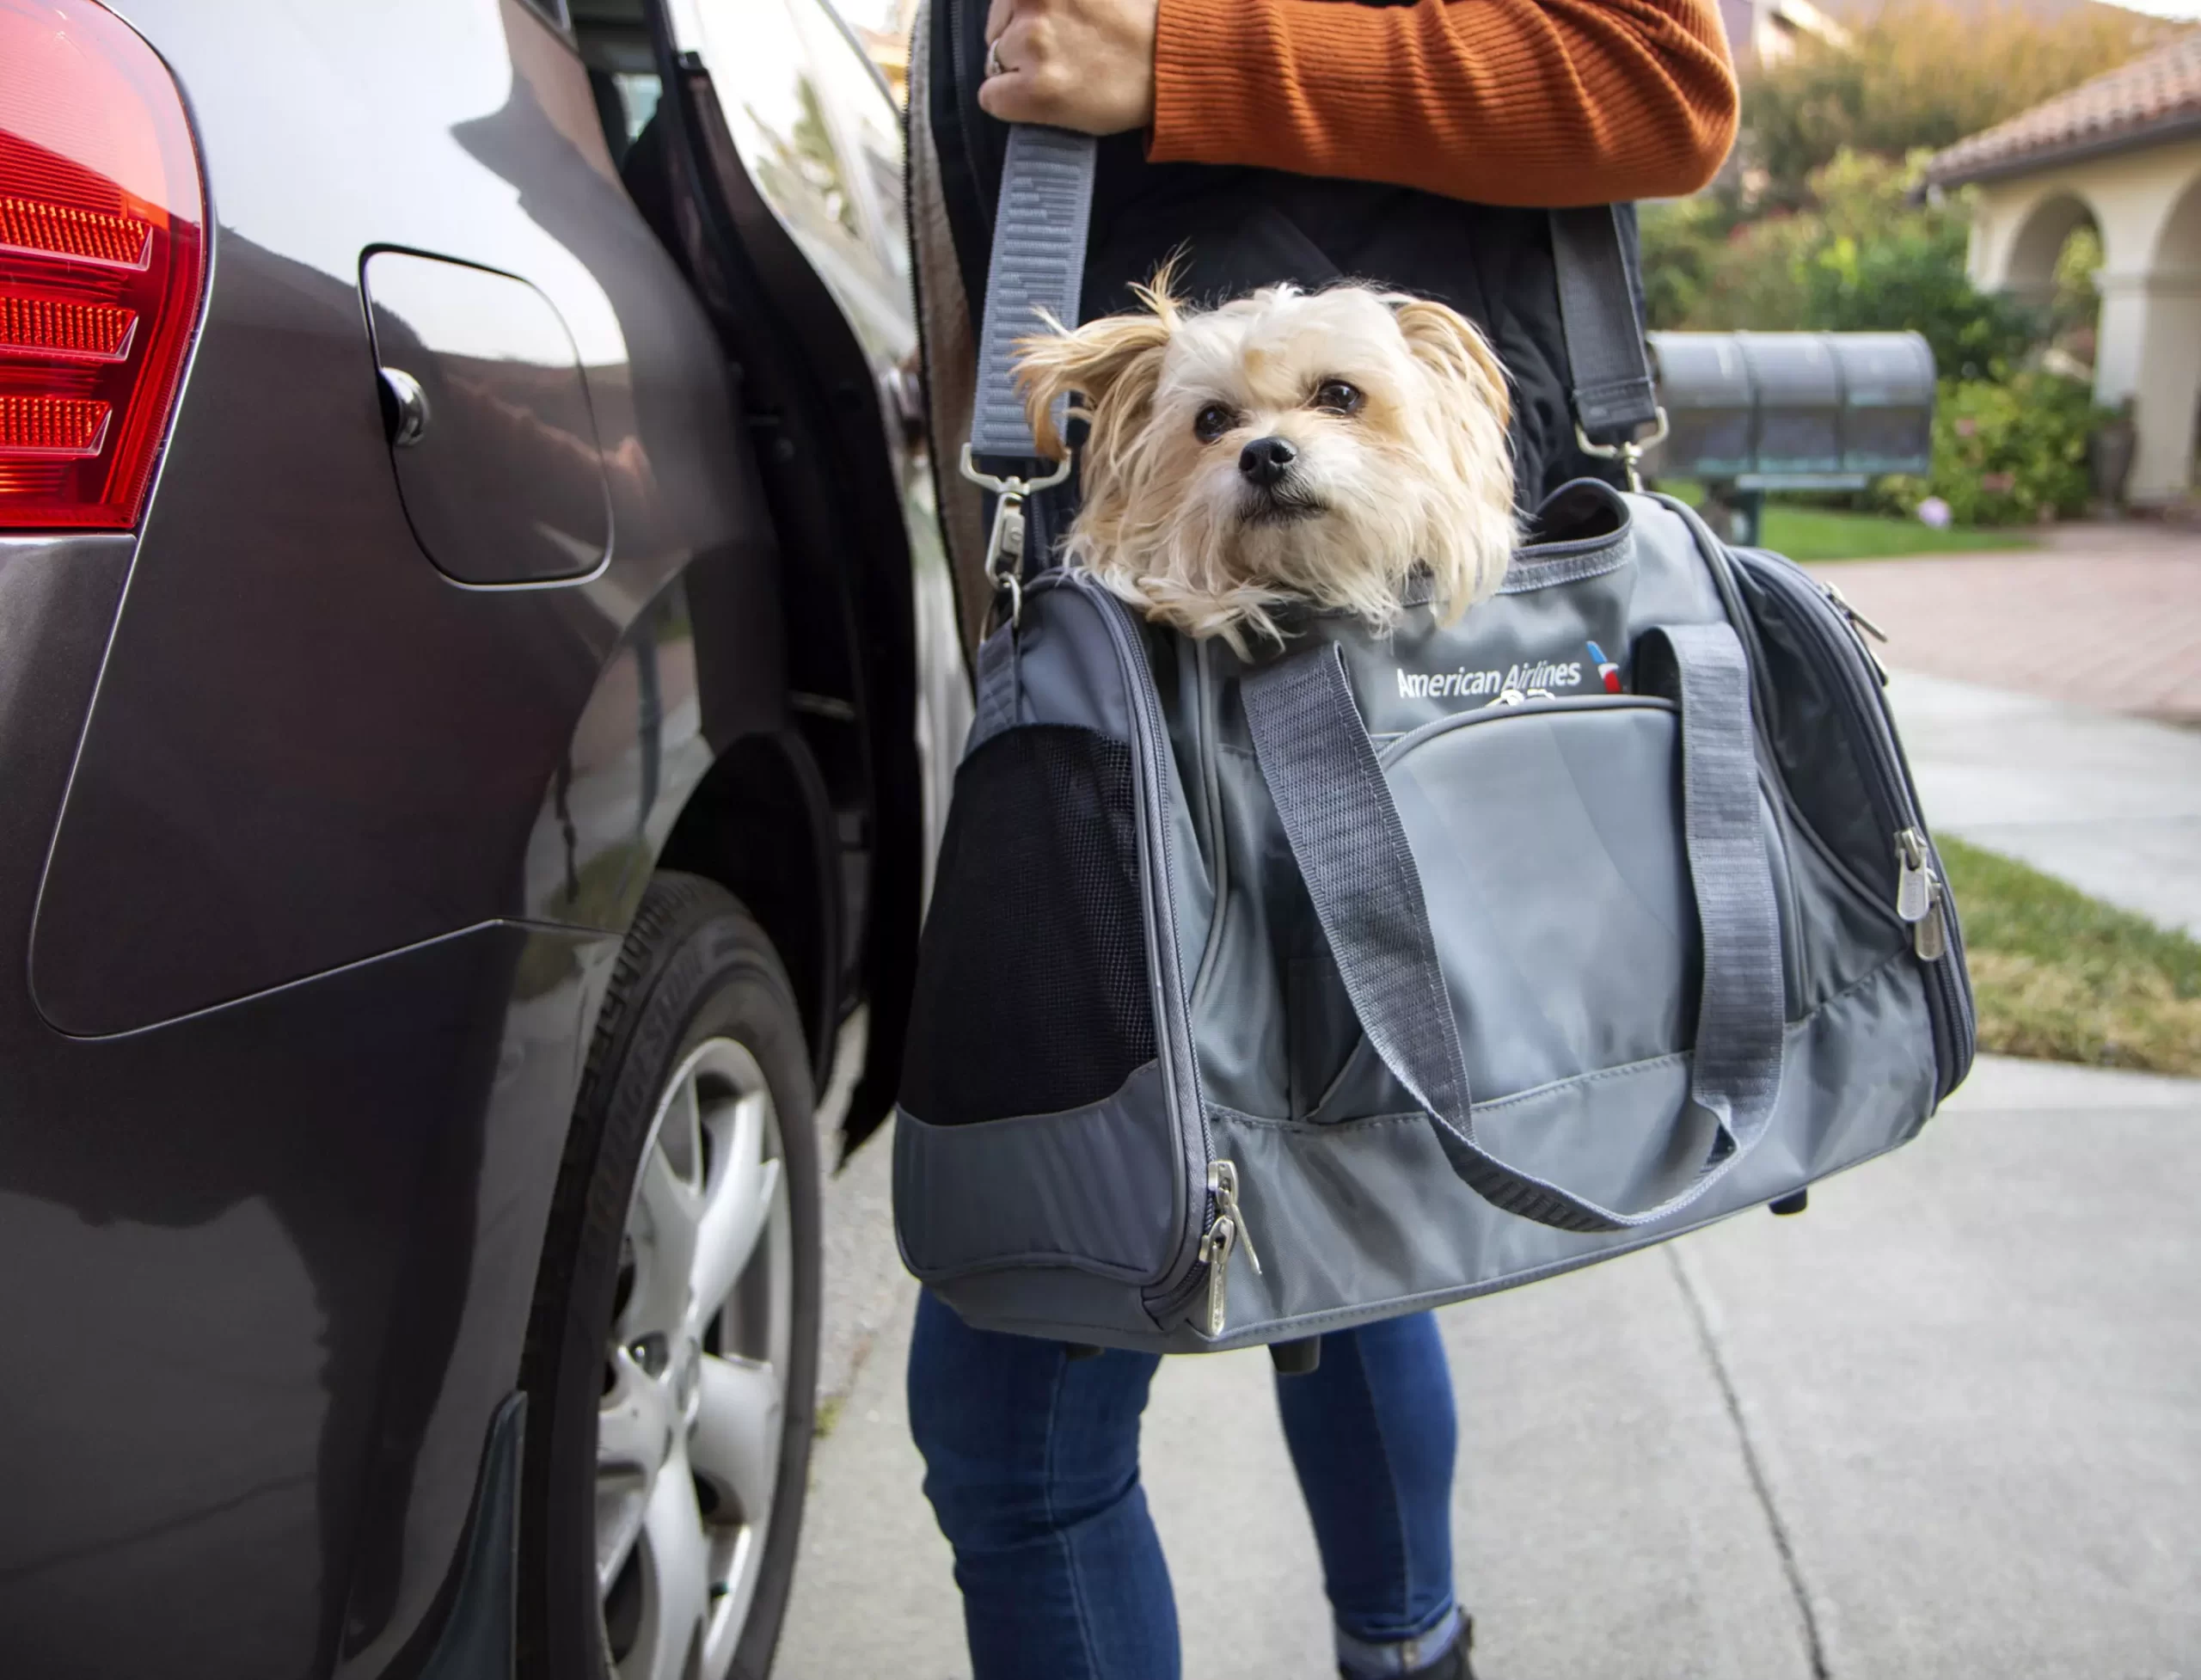 Pravidlá spoločnosti American Airlines pre domáce zvieratá umožňujúce prepravu domácich zvierat s príručnou batožinou